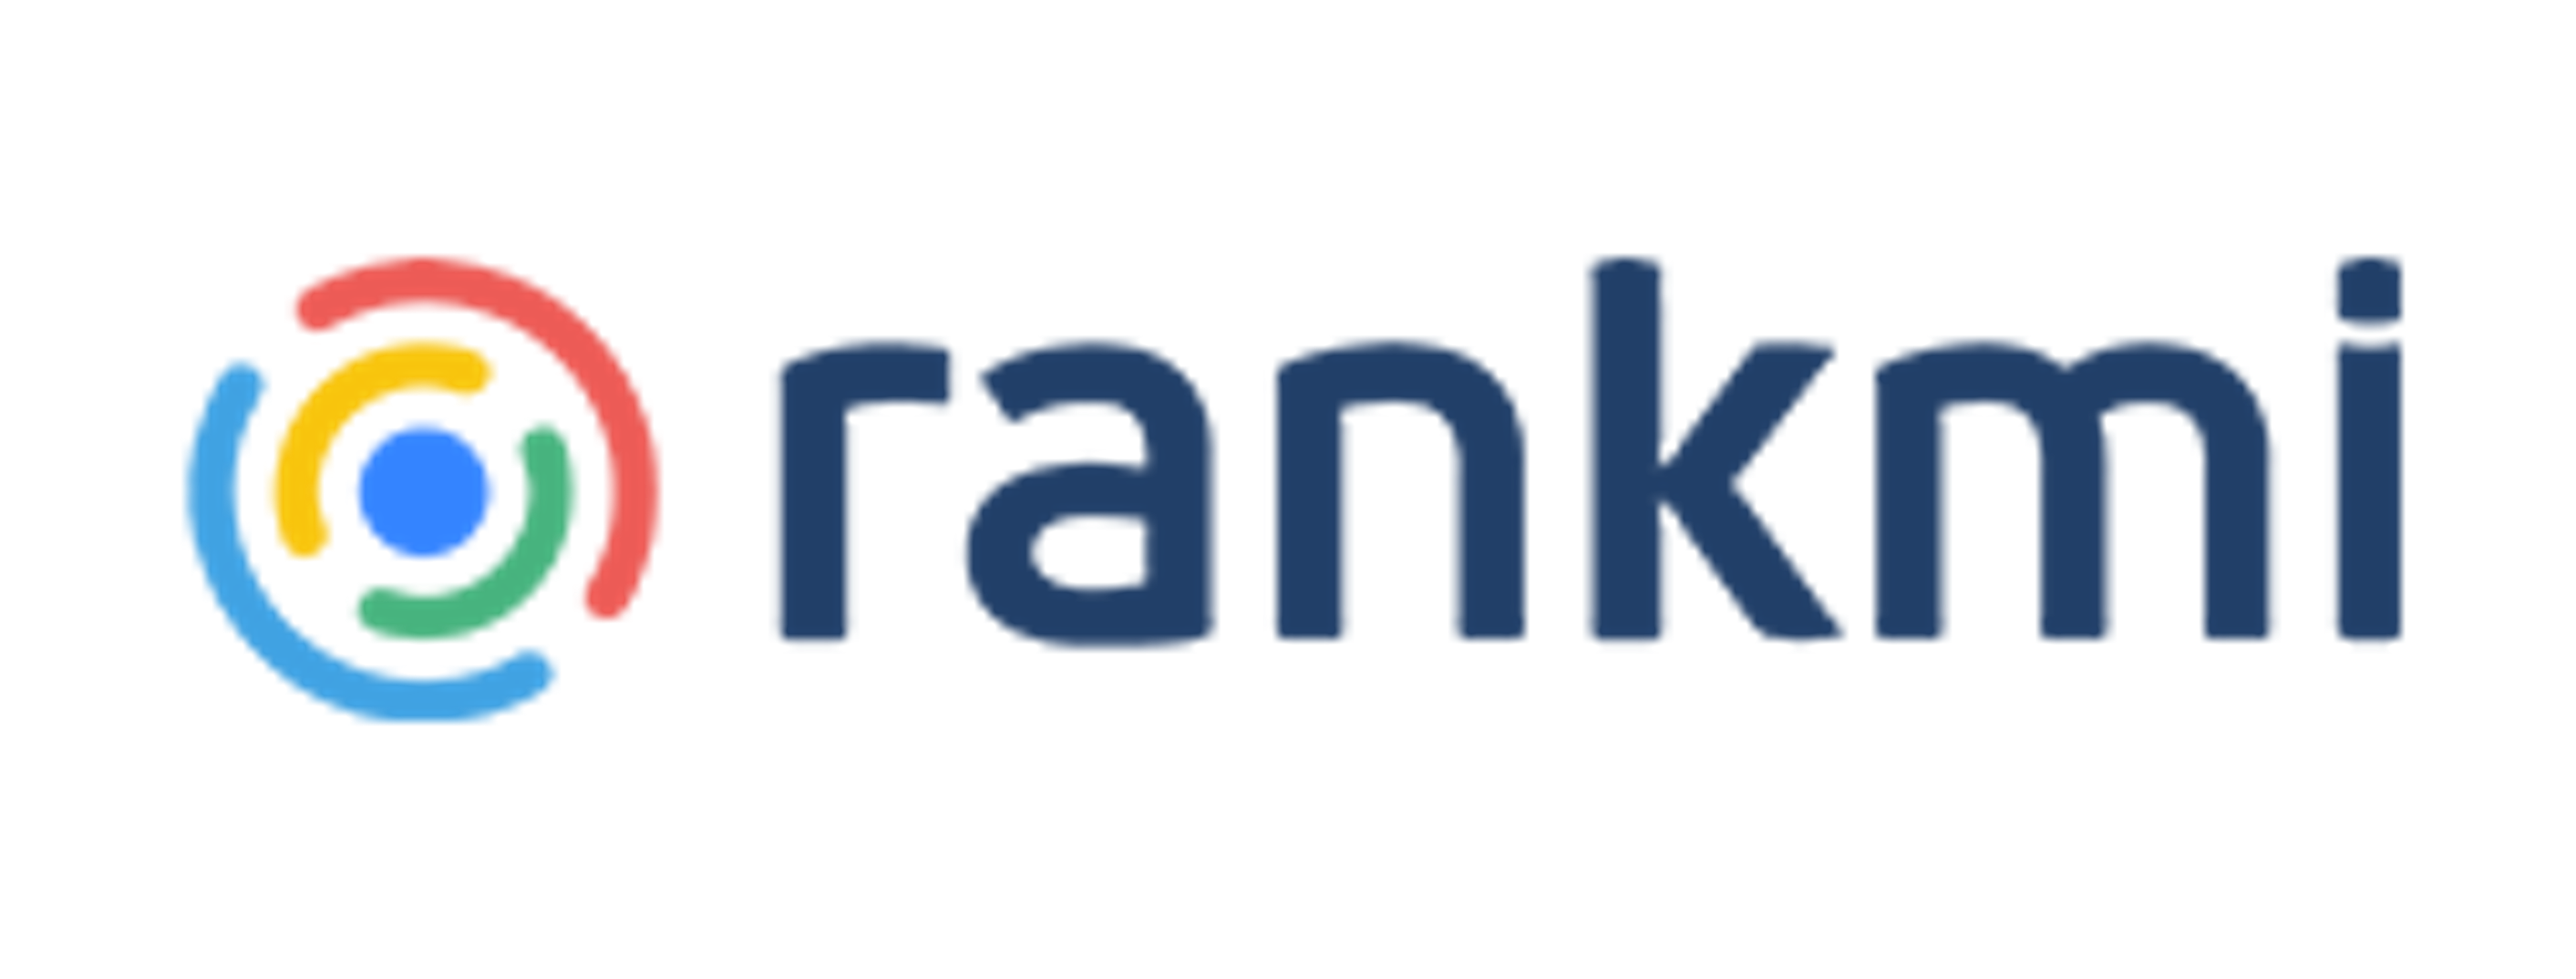 Rankmi Logo